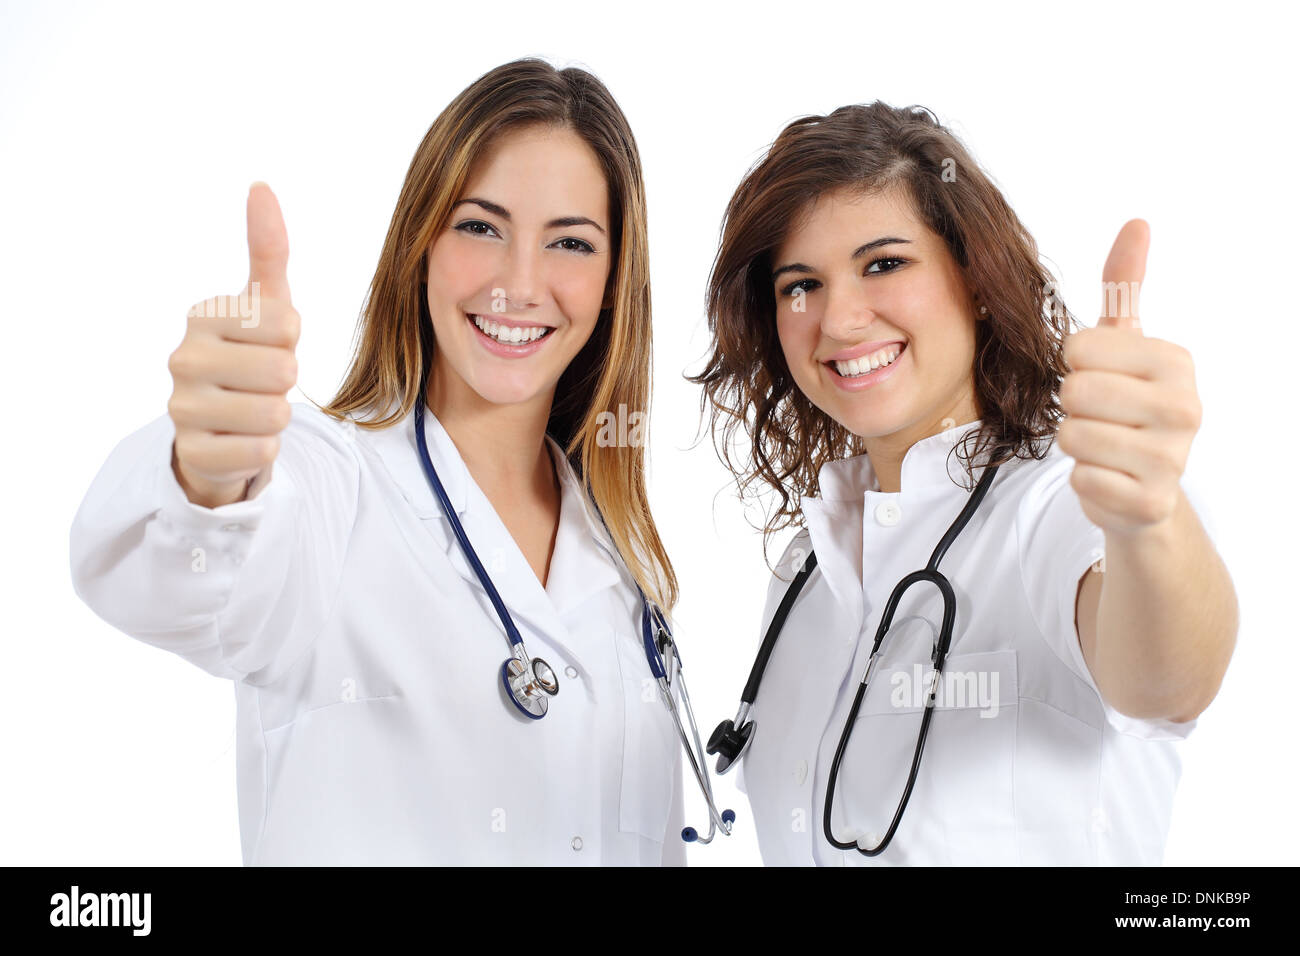 2 врача и медсестра. Медсестра улыбается. Медсестра показывает класс. Медицинская сестра улыбается. Две медсестры.